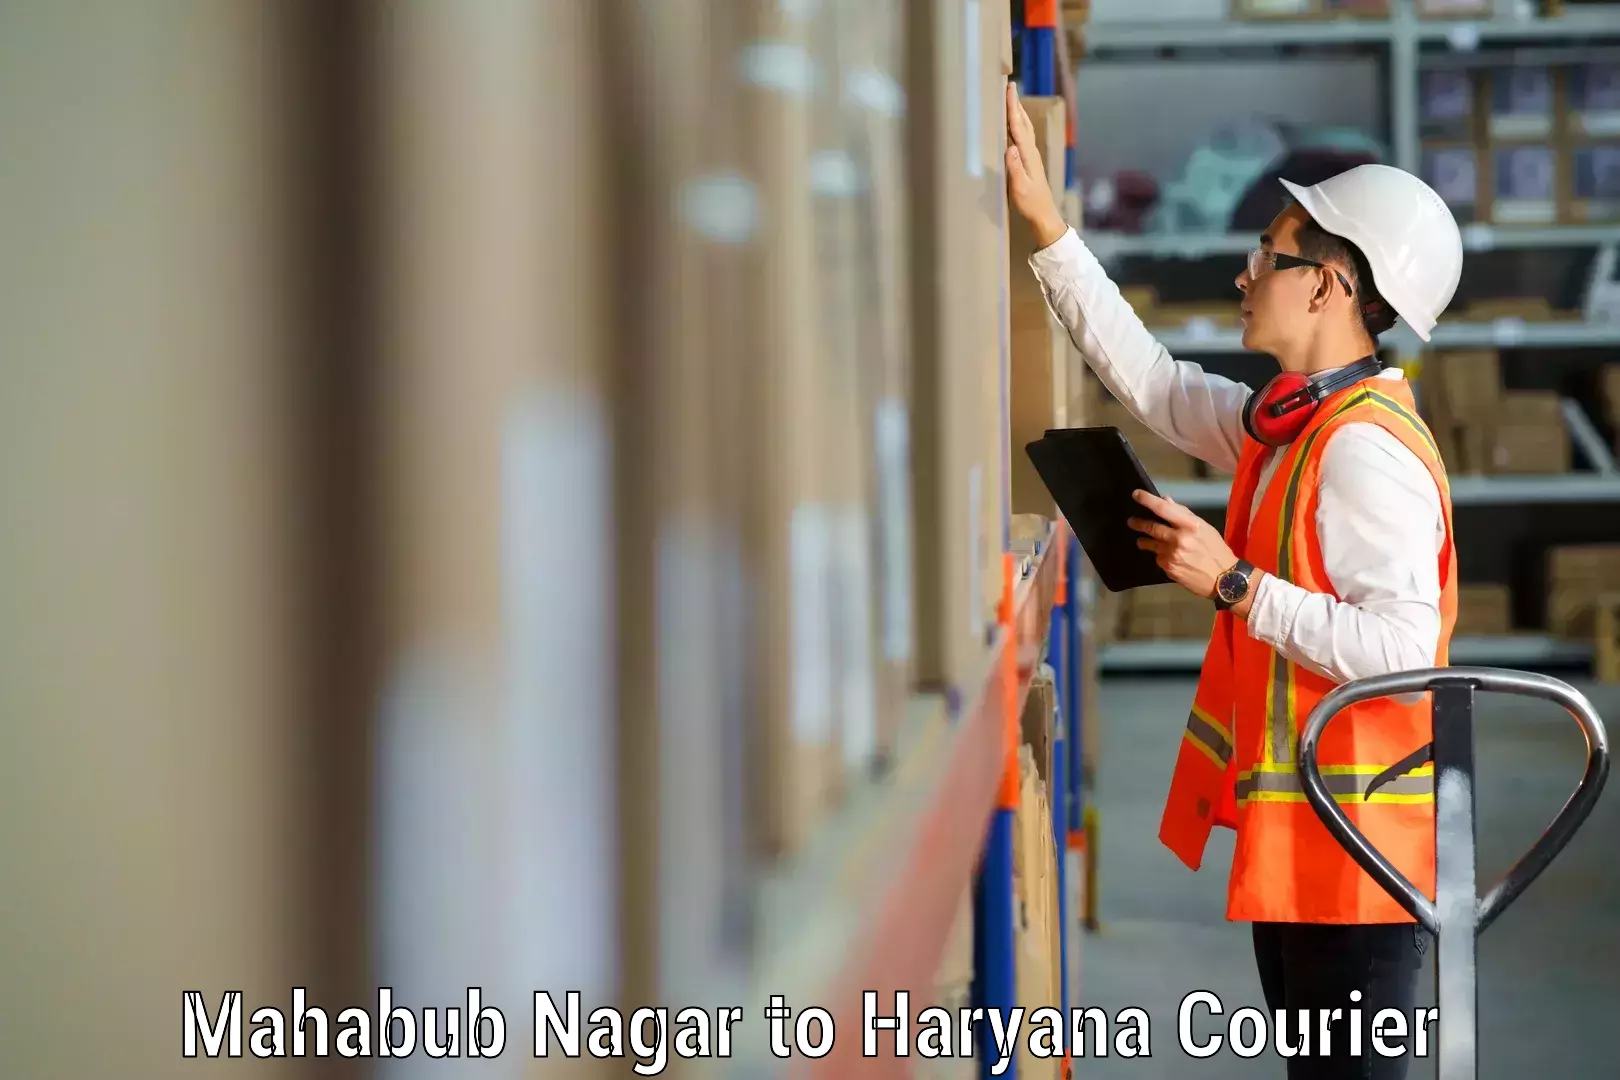 Efficient moving company Mahabub Nagar to Haryana